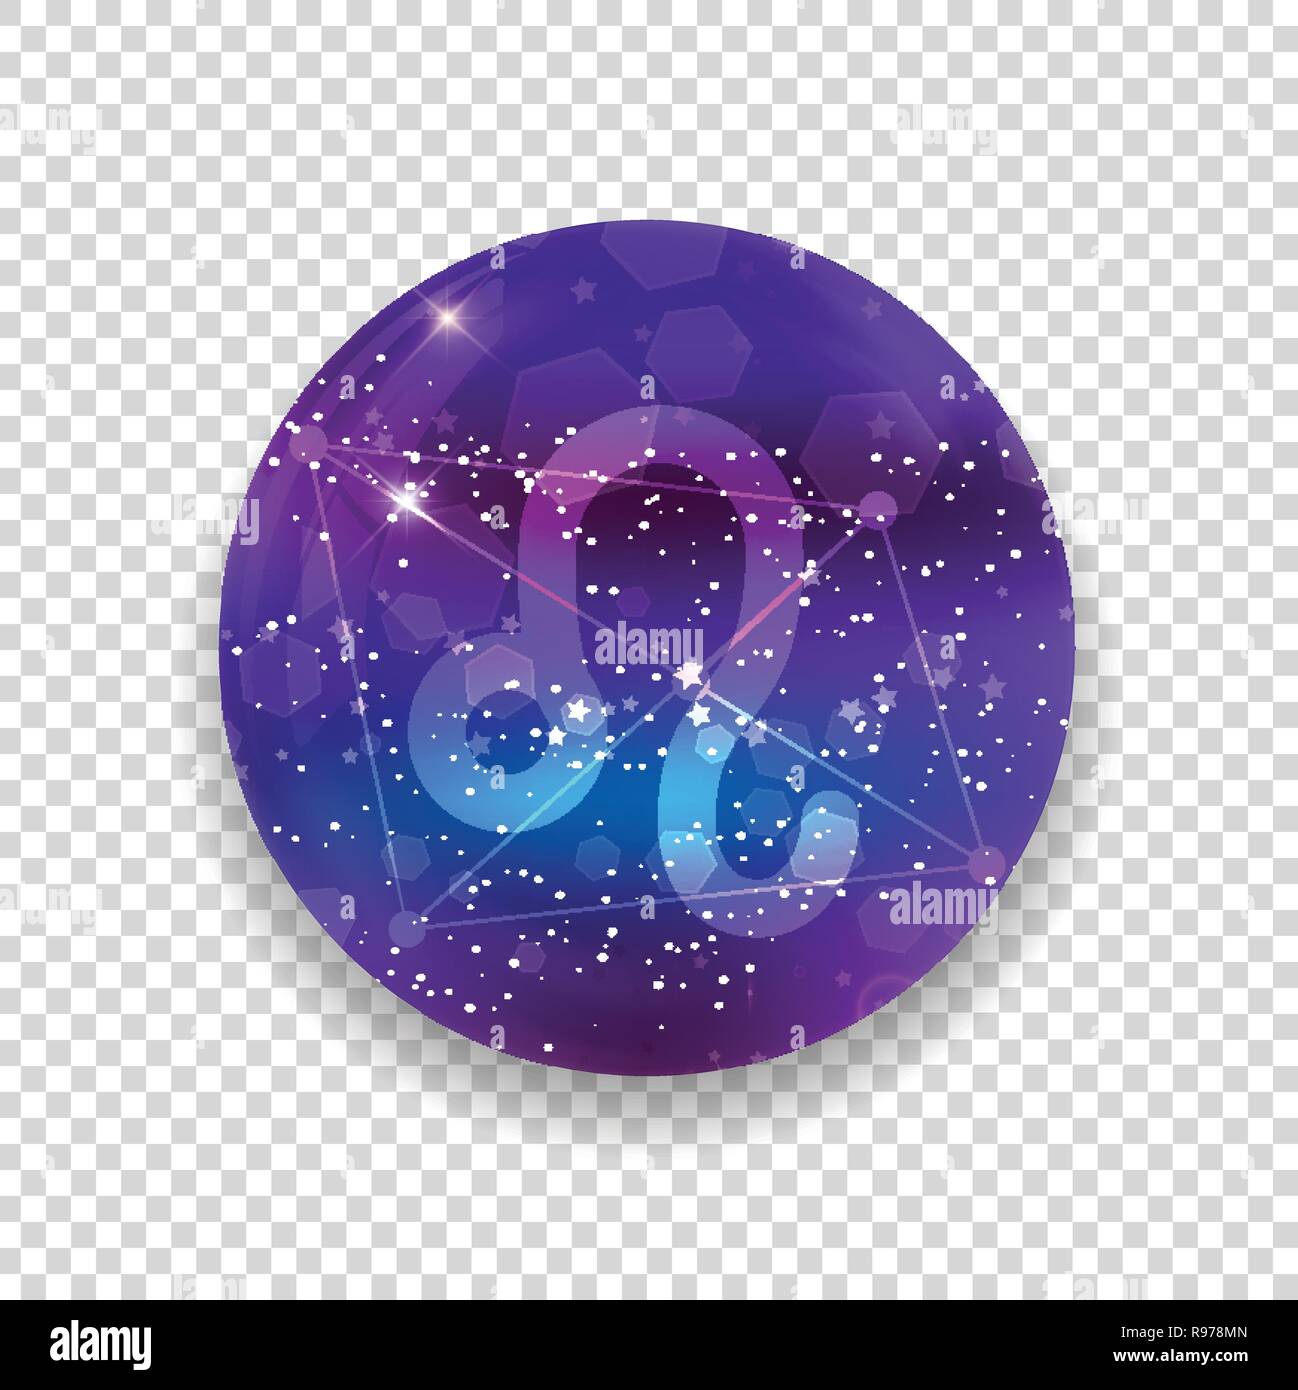 Leone segno zodiacale e costellazione sul cosmica cielo viola con stelle luccicanti e nebula isolato su sfondo trasparente. Vettore icona al neon, web butto Illustrazione Vettoriale